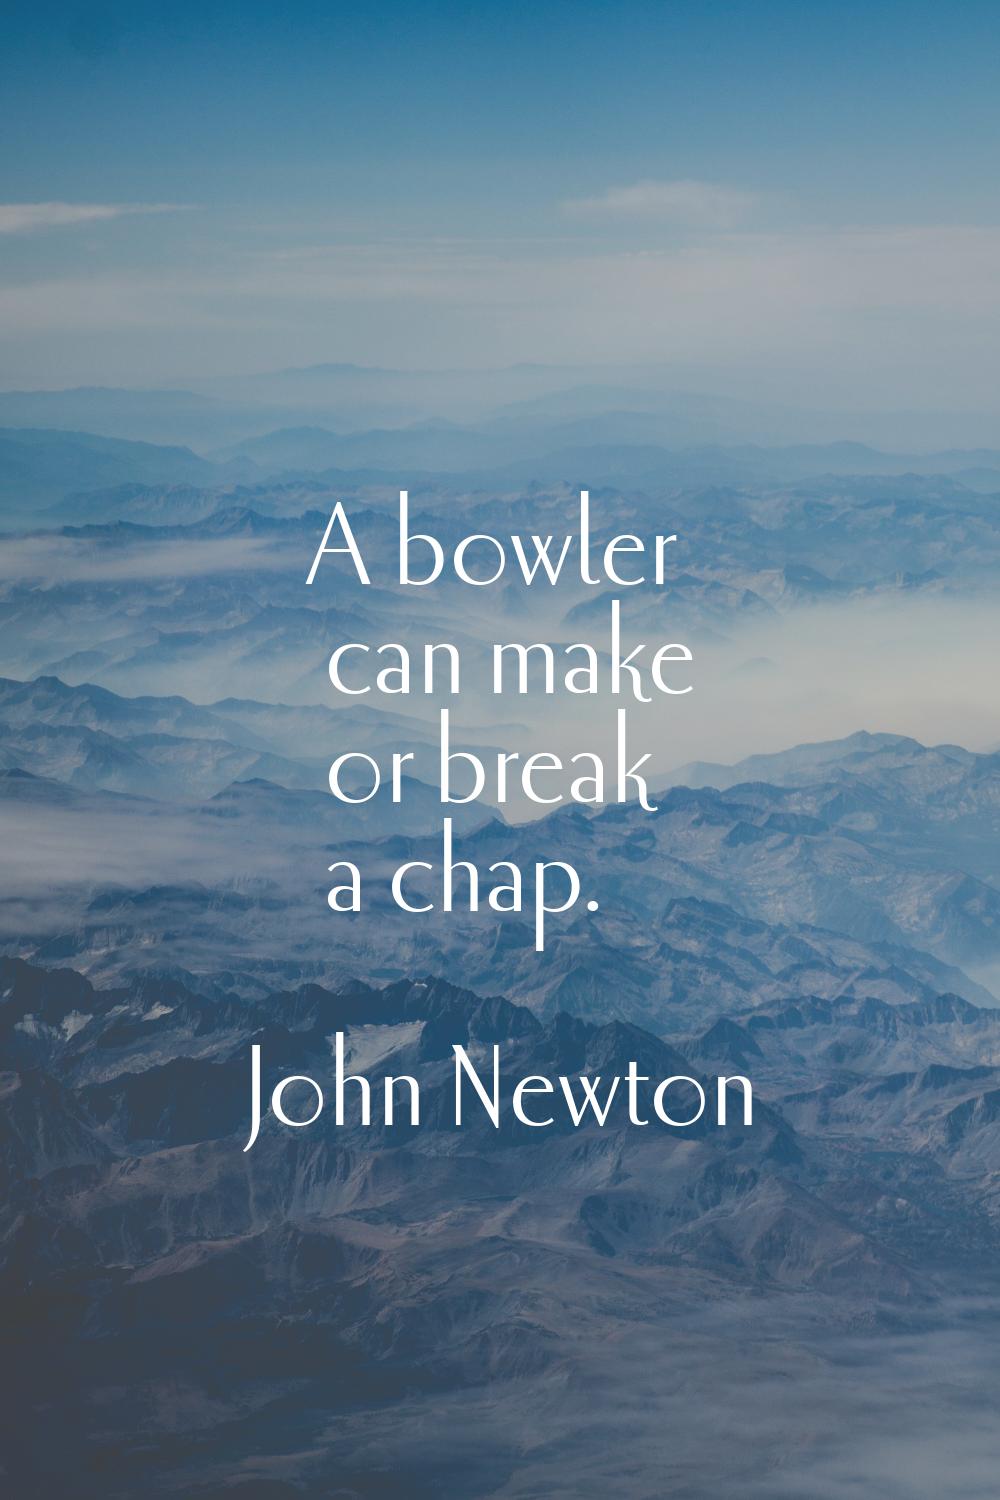 A bowler can make or break a chap.